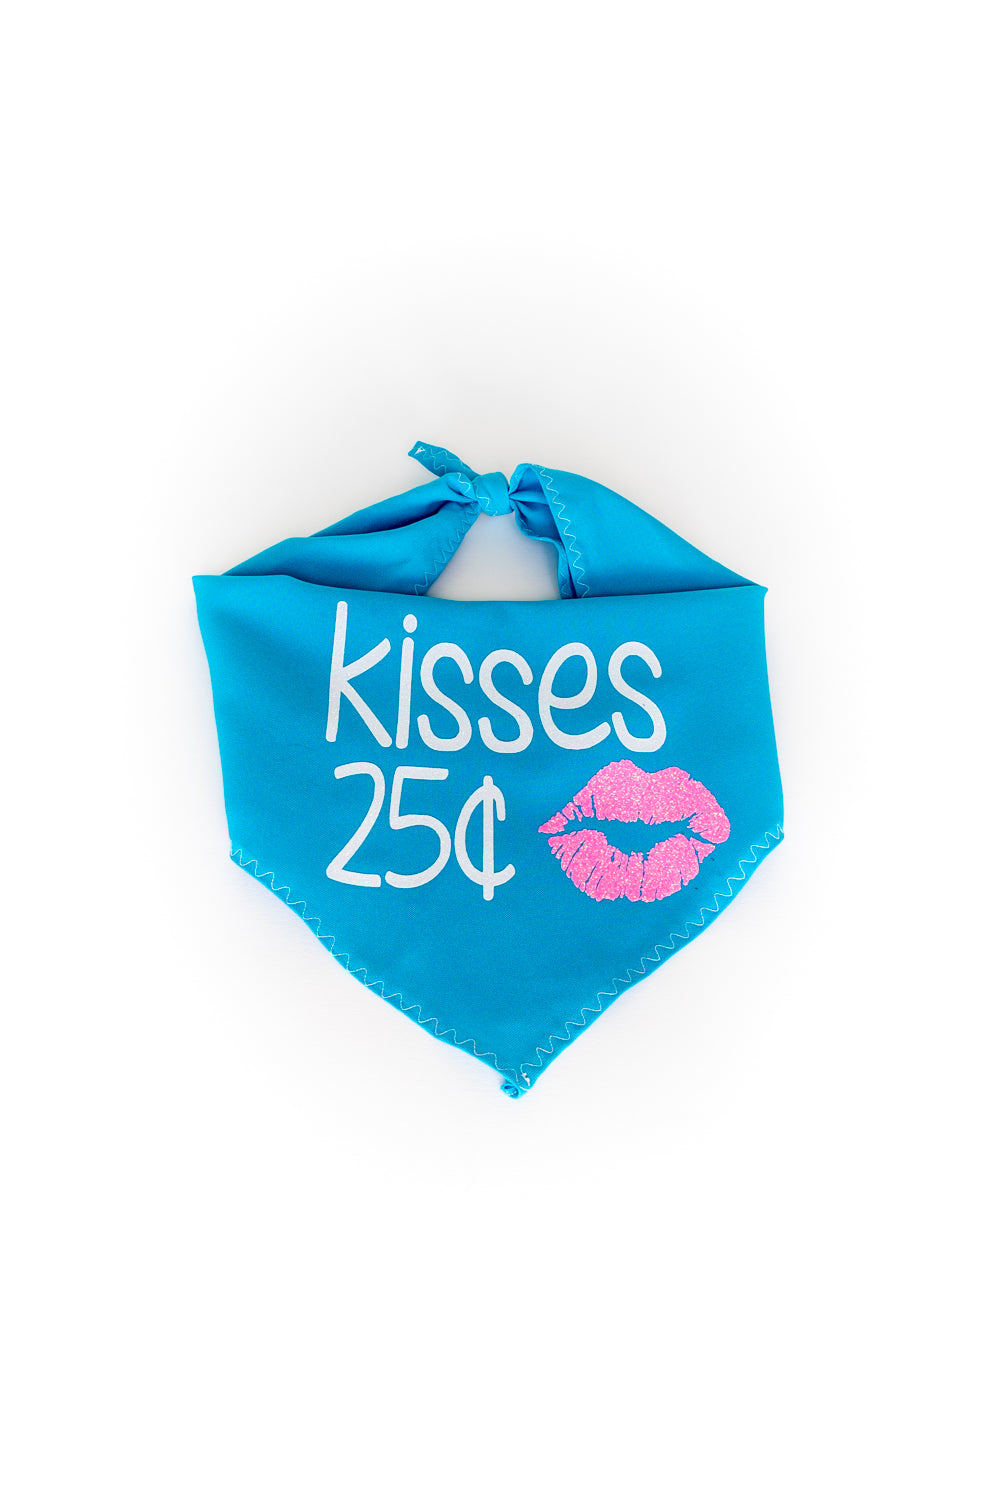 Kisses .25c - Bandana